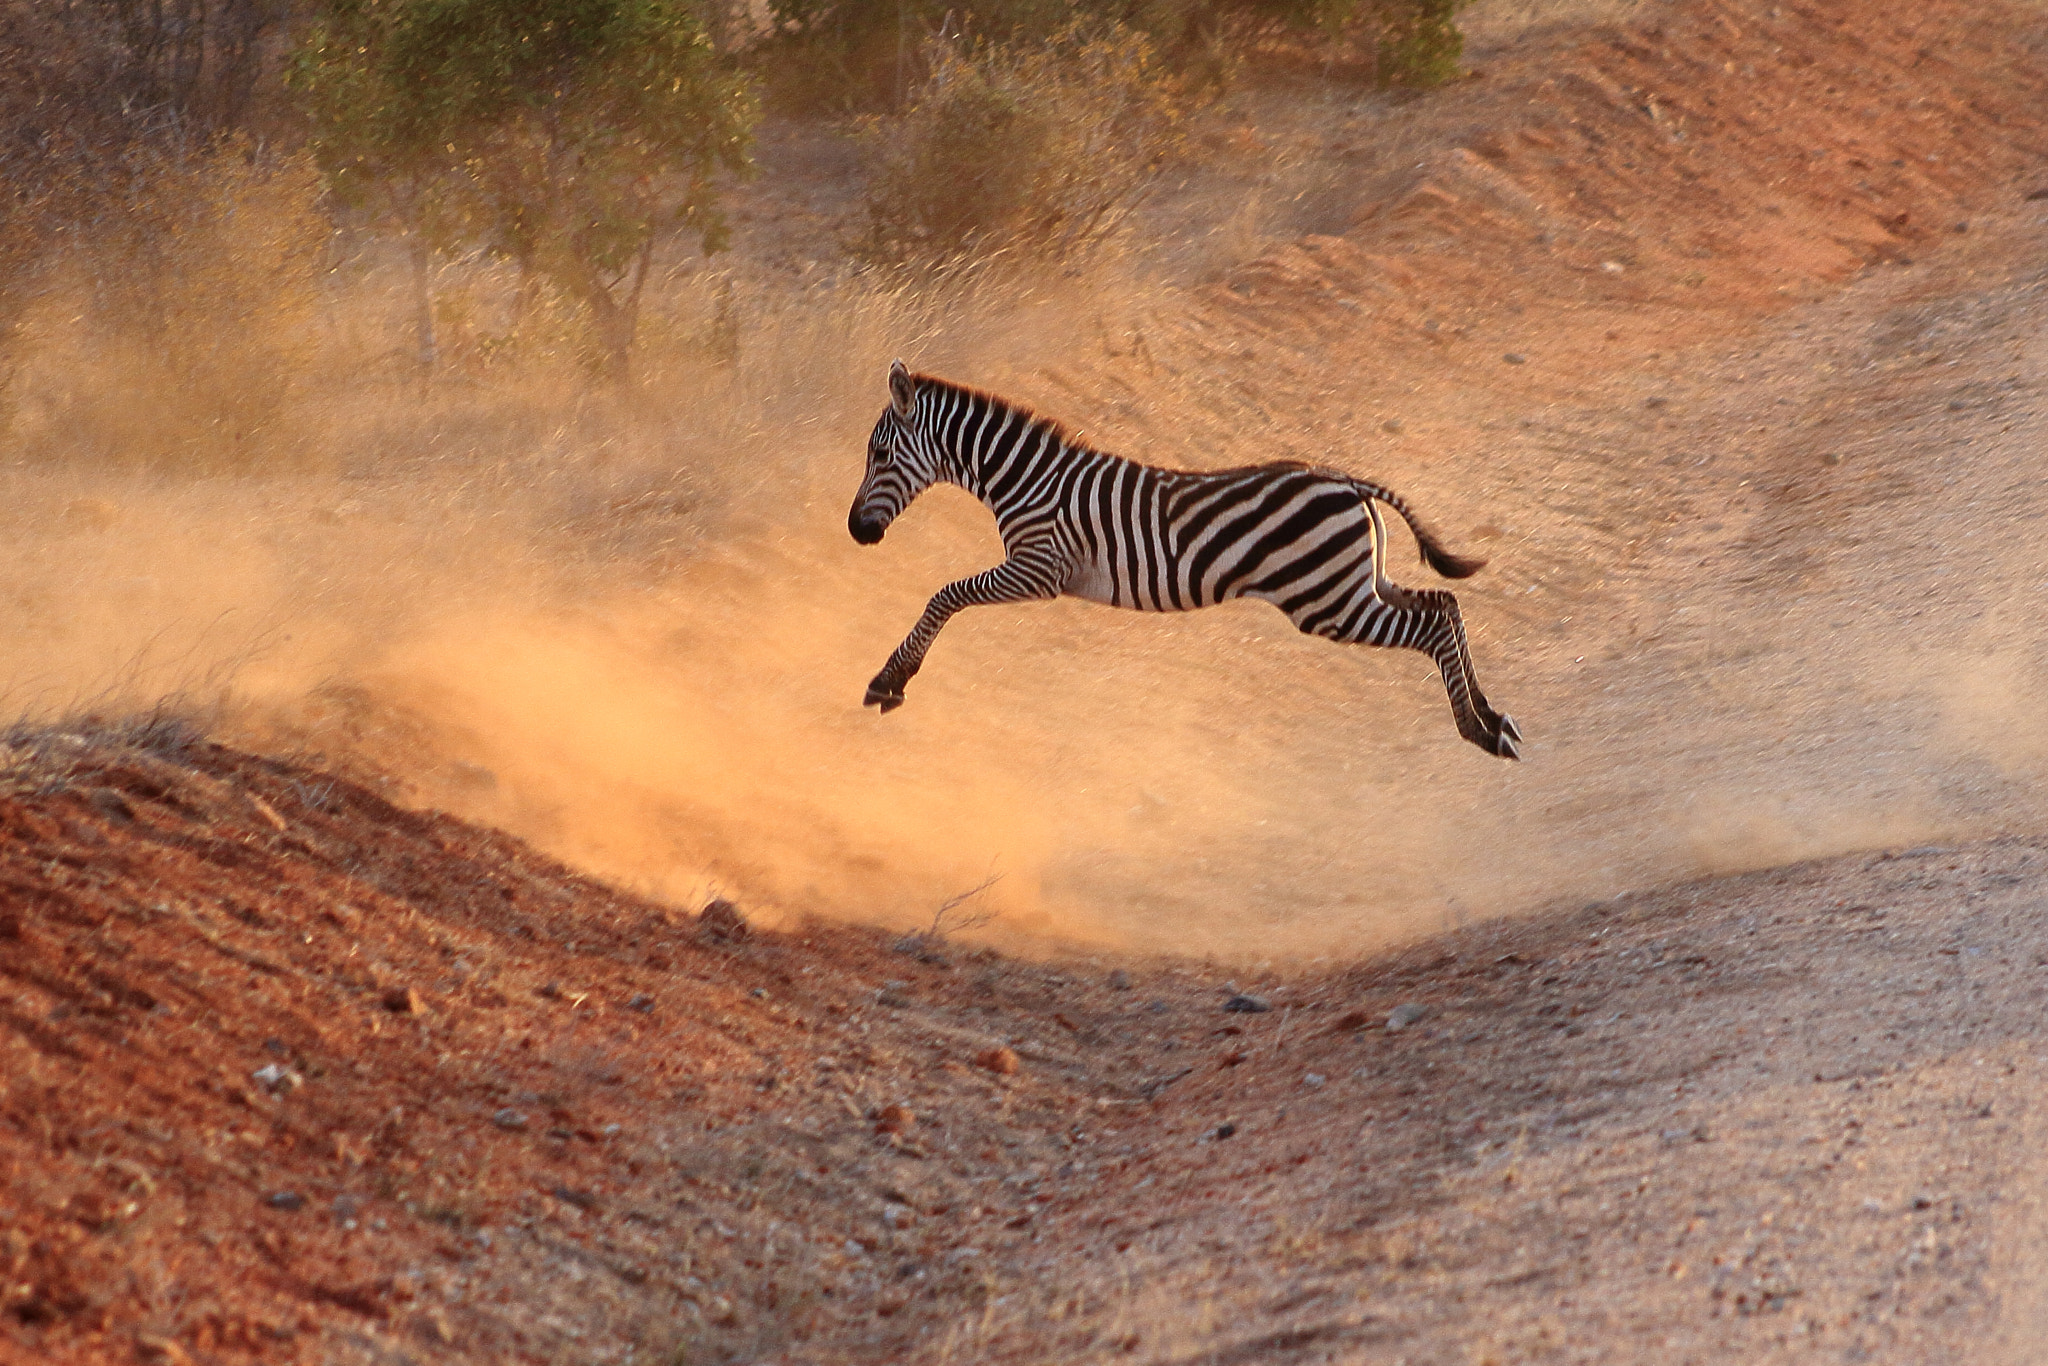 Canon EOS 50D sample photo. Kenia young zebra photography